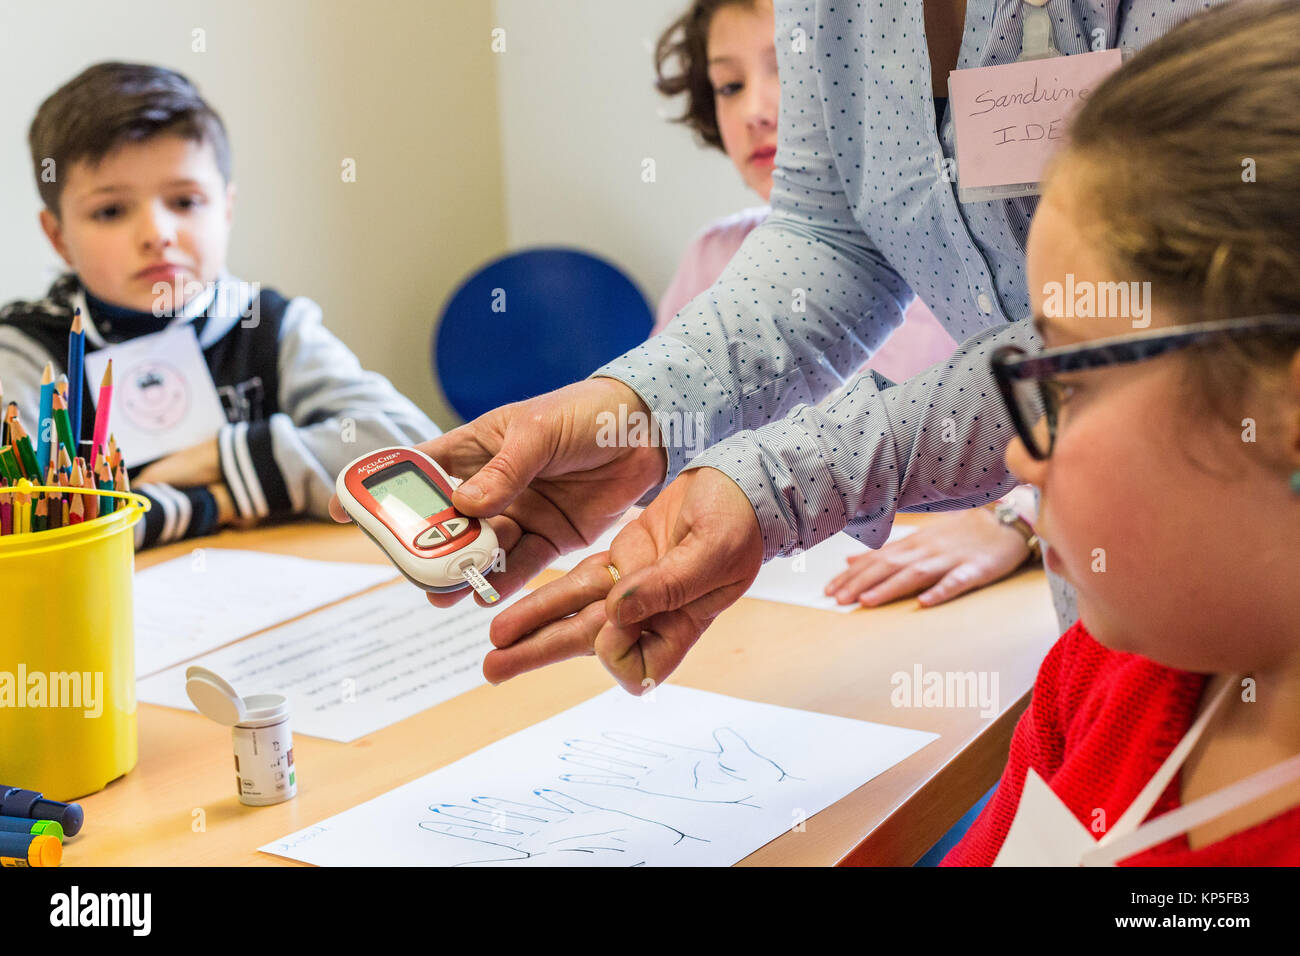 Zuckerkranke Kinder die Teilnahme an einer therapeutischen Ausbildung Workshop von einer Krankenschwester animiert. Die pädiatrische Abteilung des Krankenhauses in Chambéry, Frankreich. Stockfoto